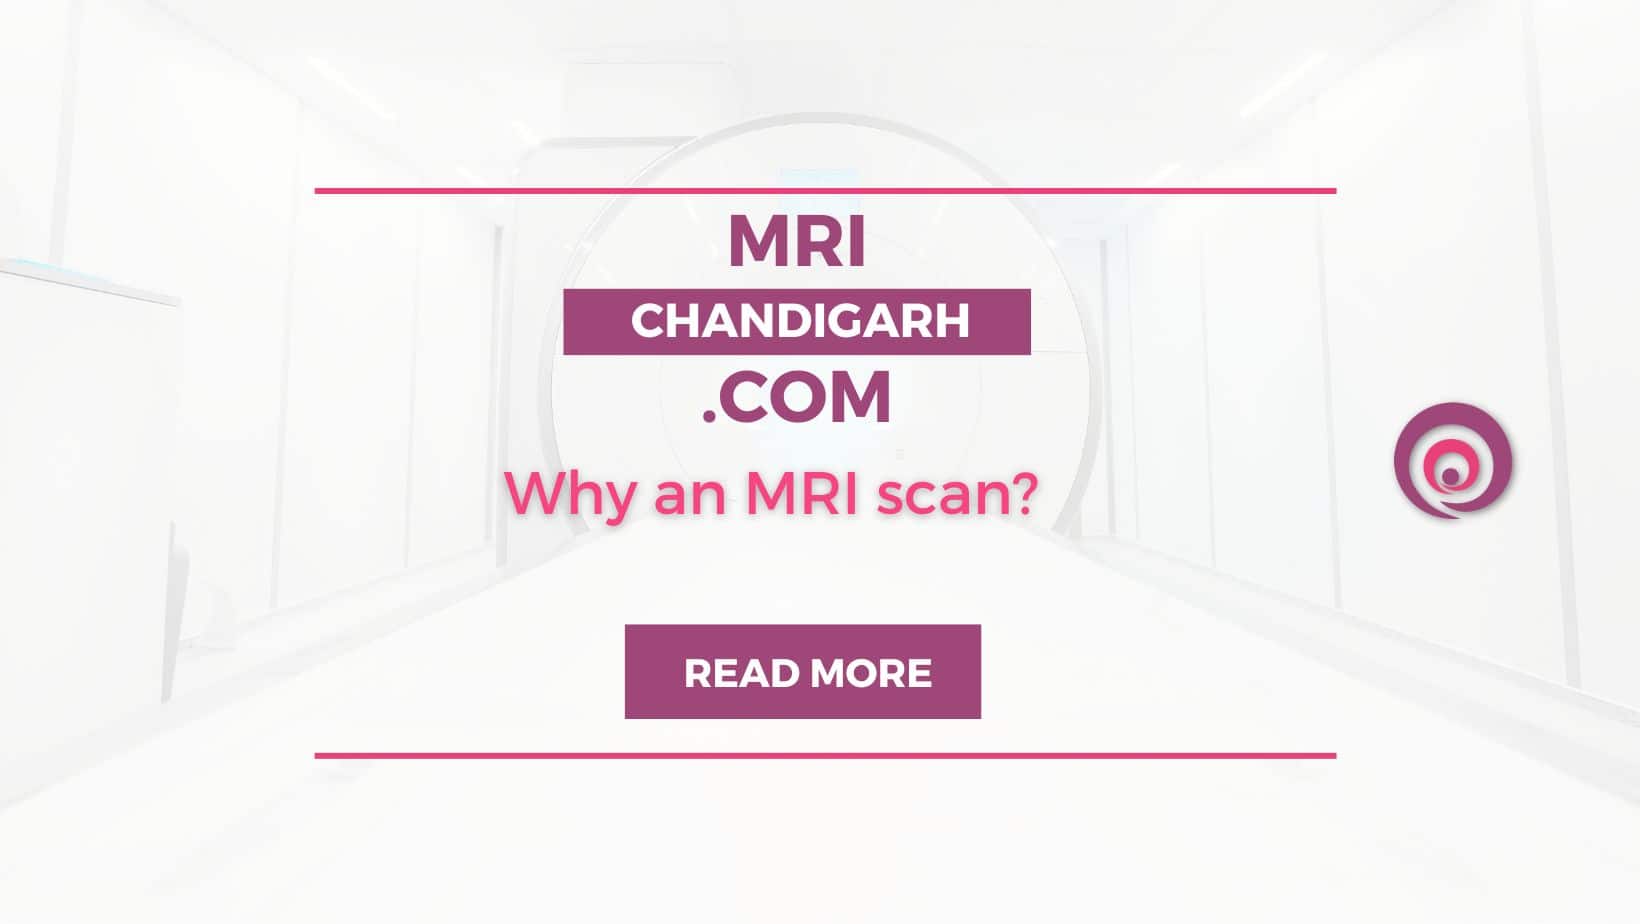 Why an MRI scan?